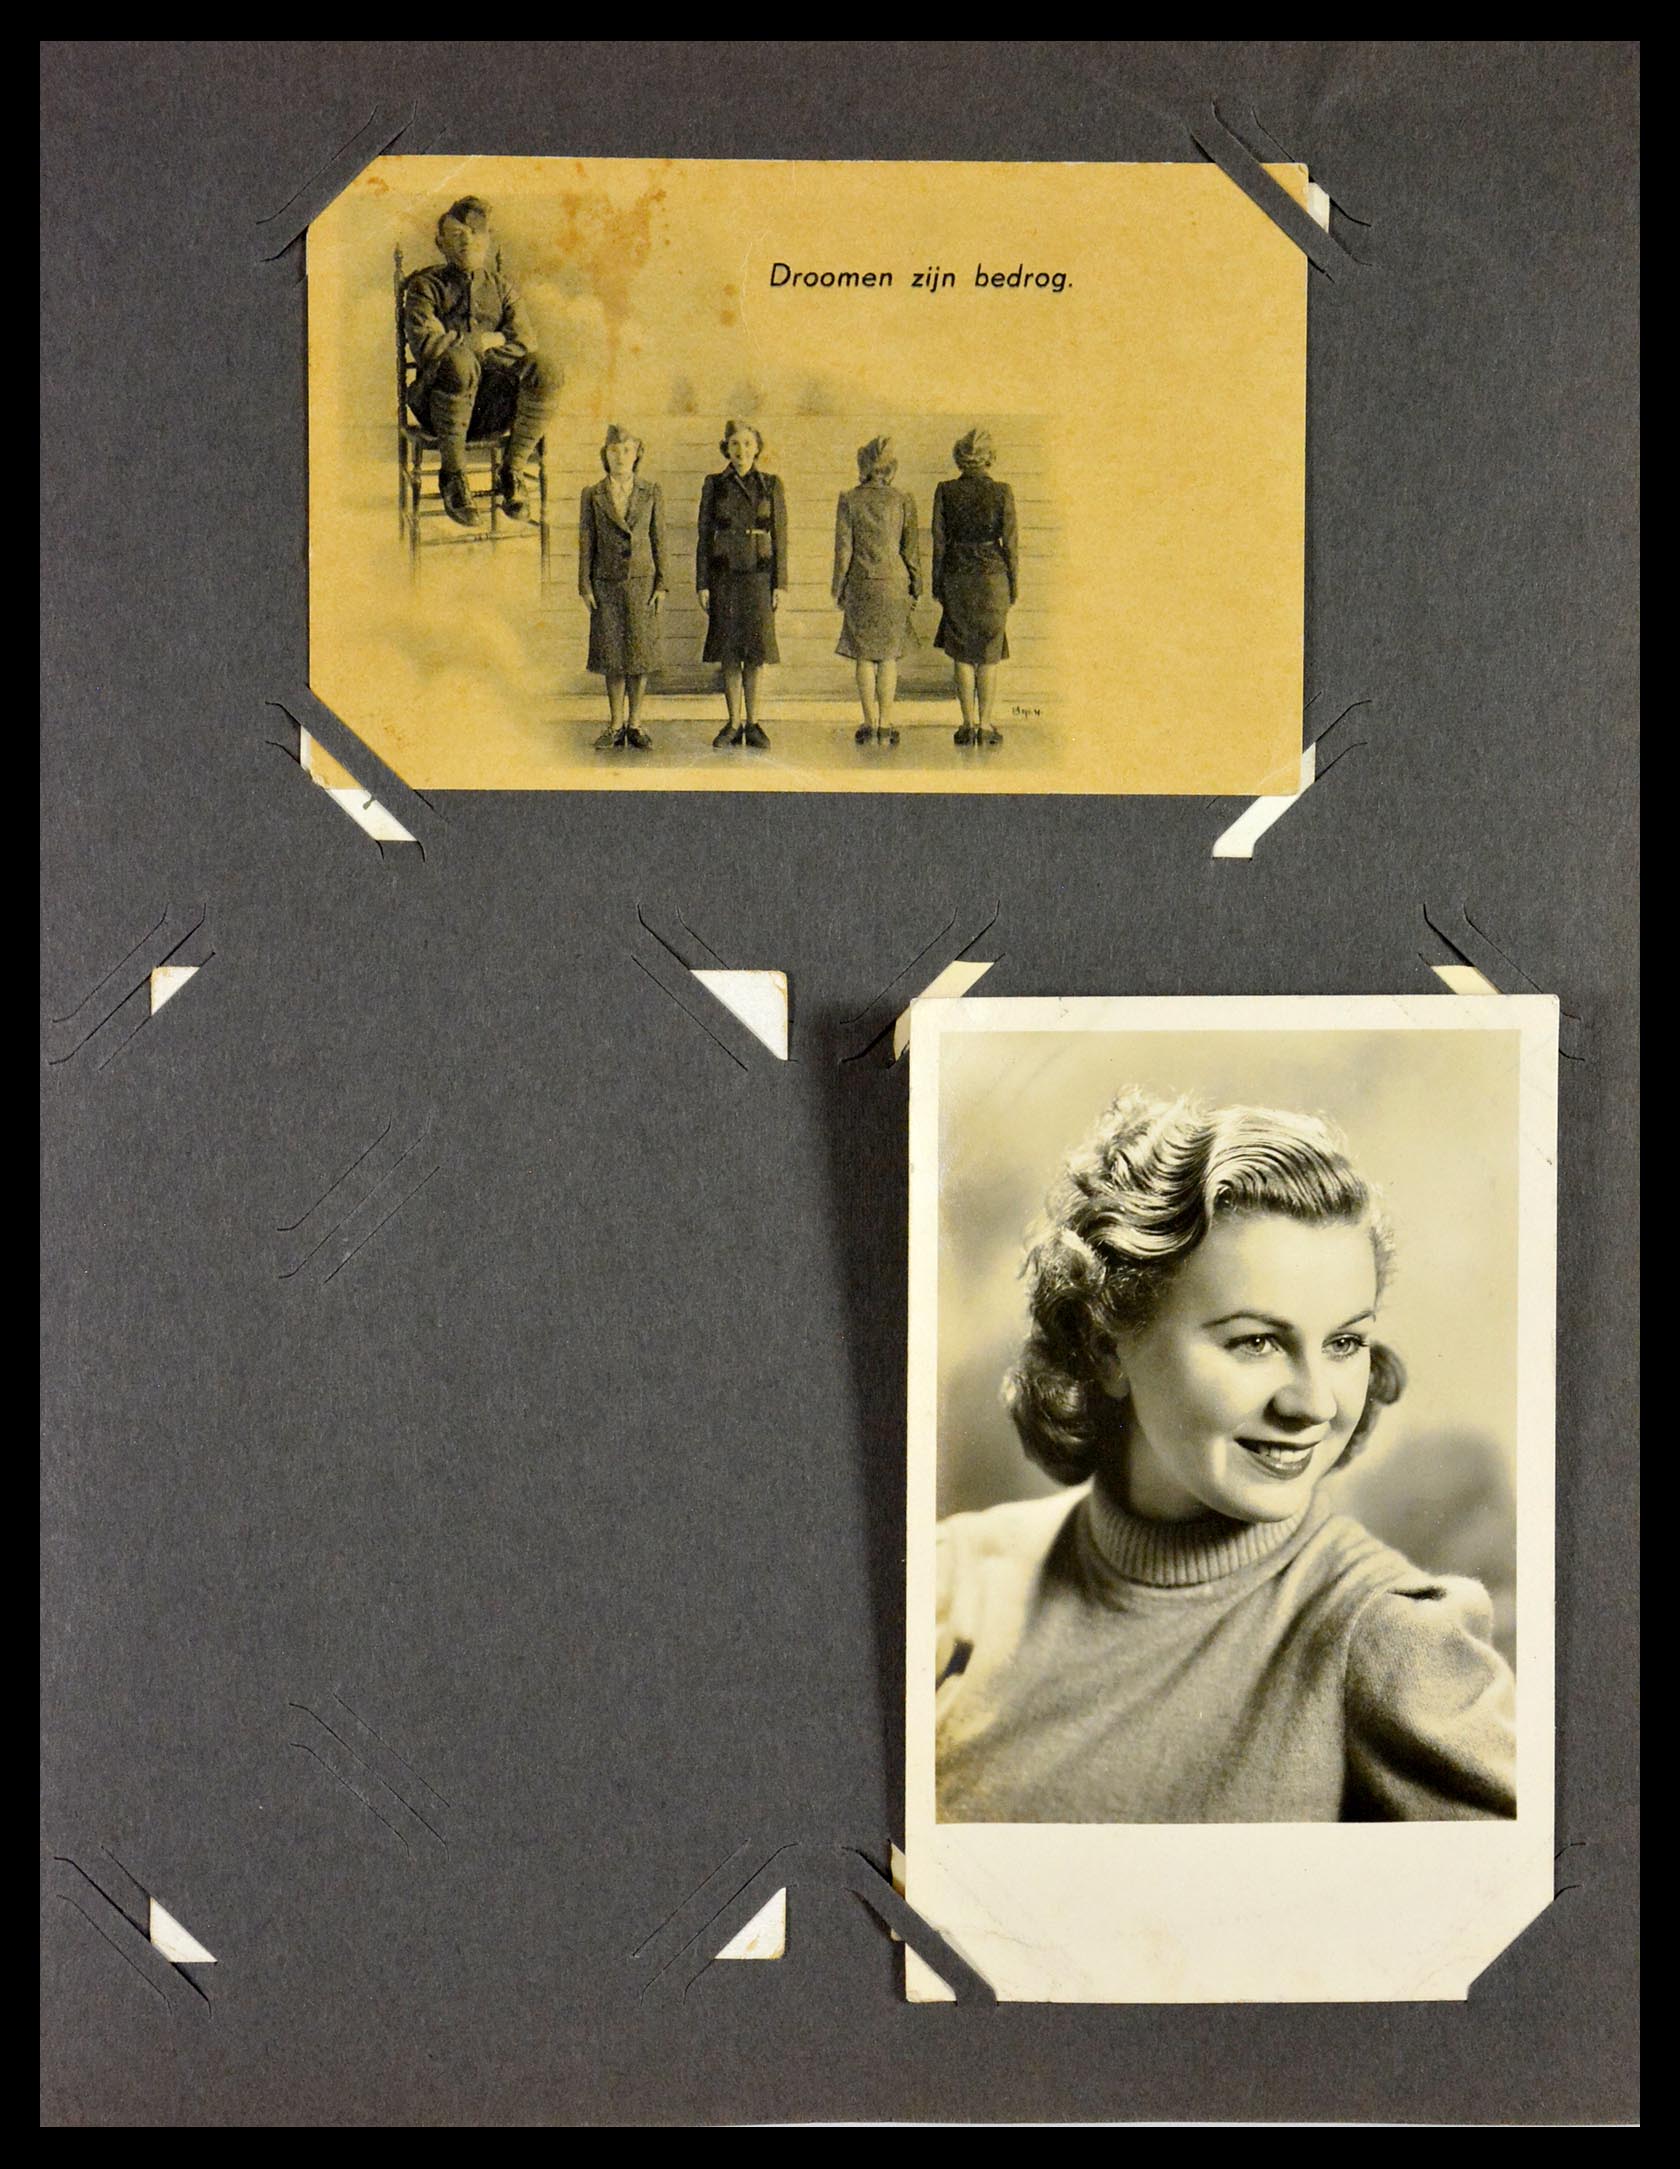 29518 004 - 29518 Nederland ansichtkaarten 1939-1940.